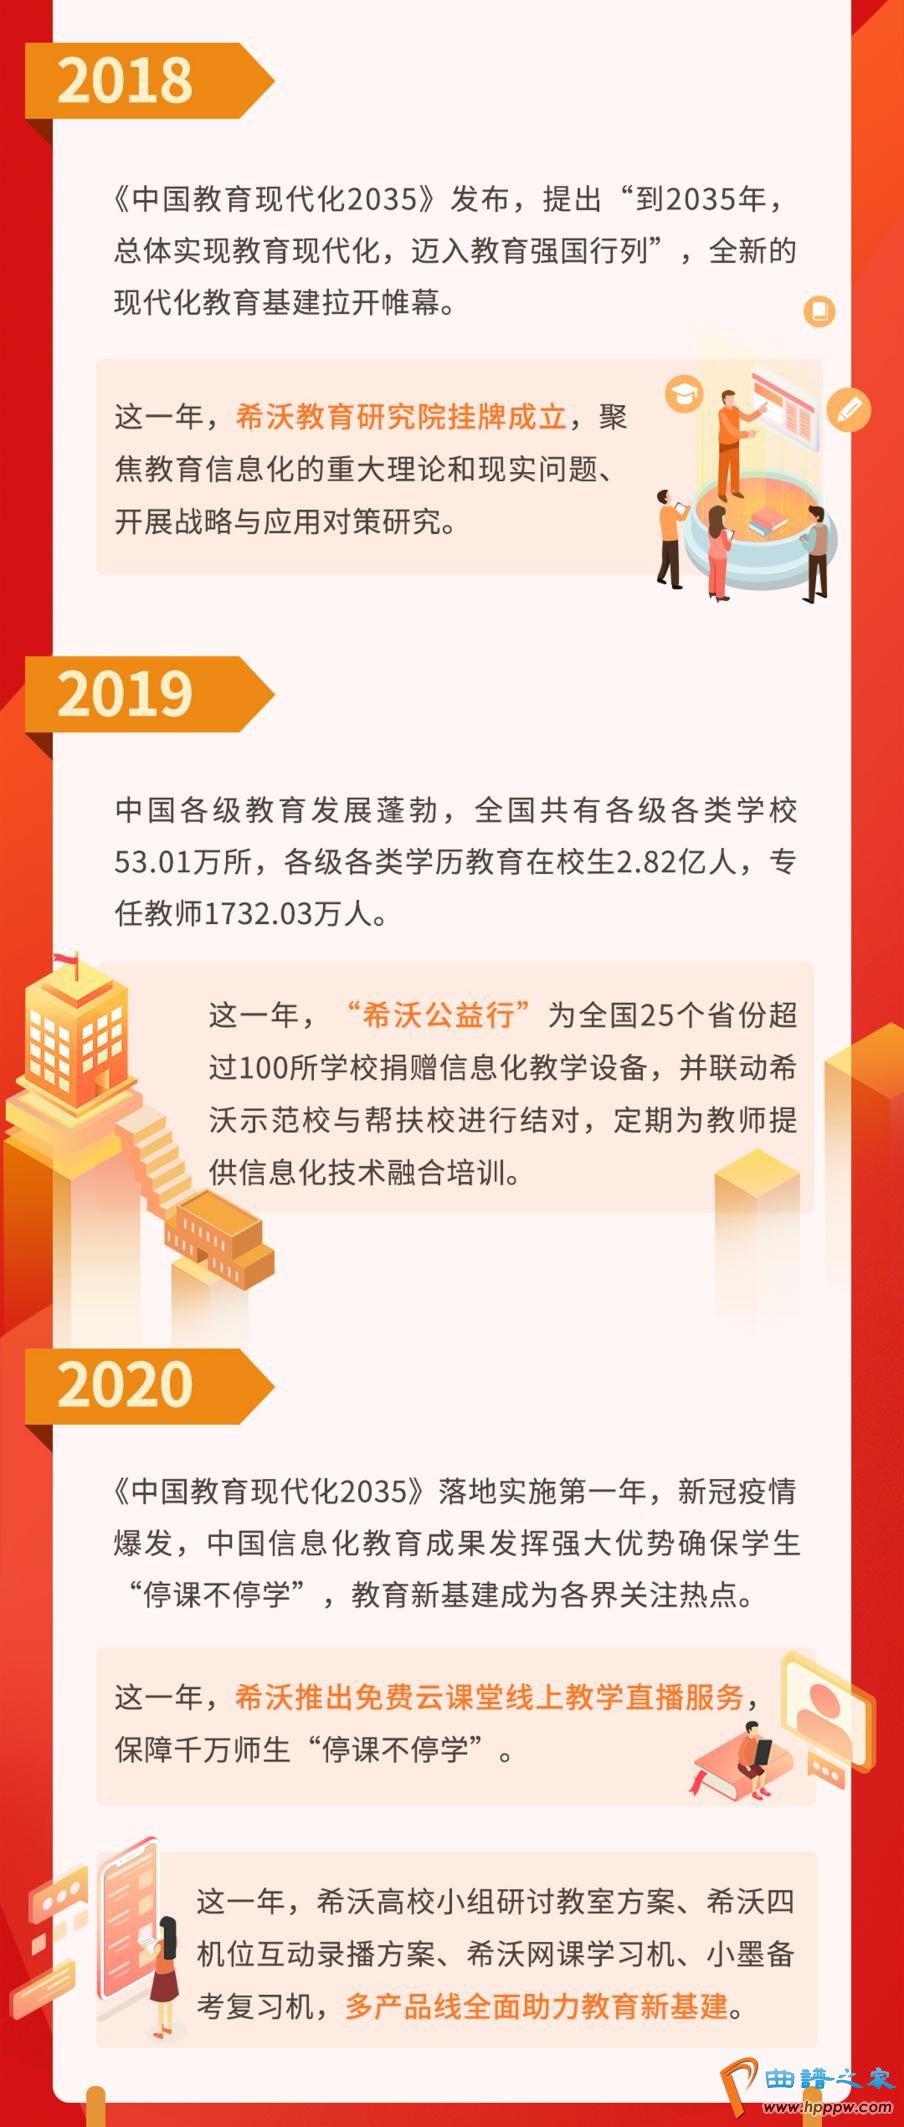 万博体育maxbextx手机版:第五届中国戏剧朗读演出隆重举行